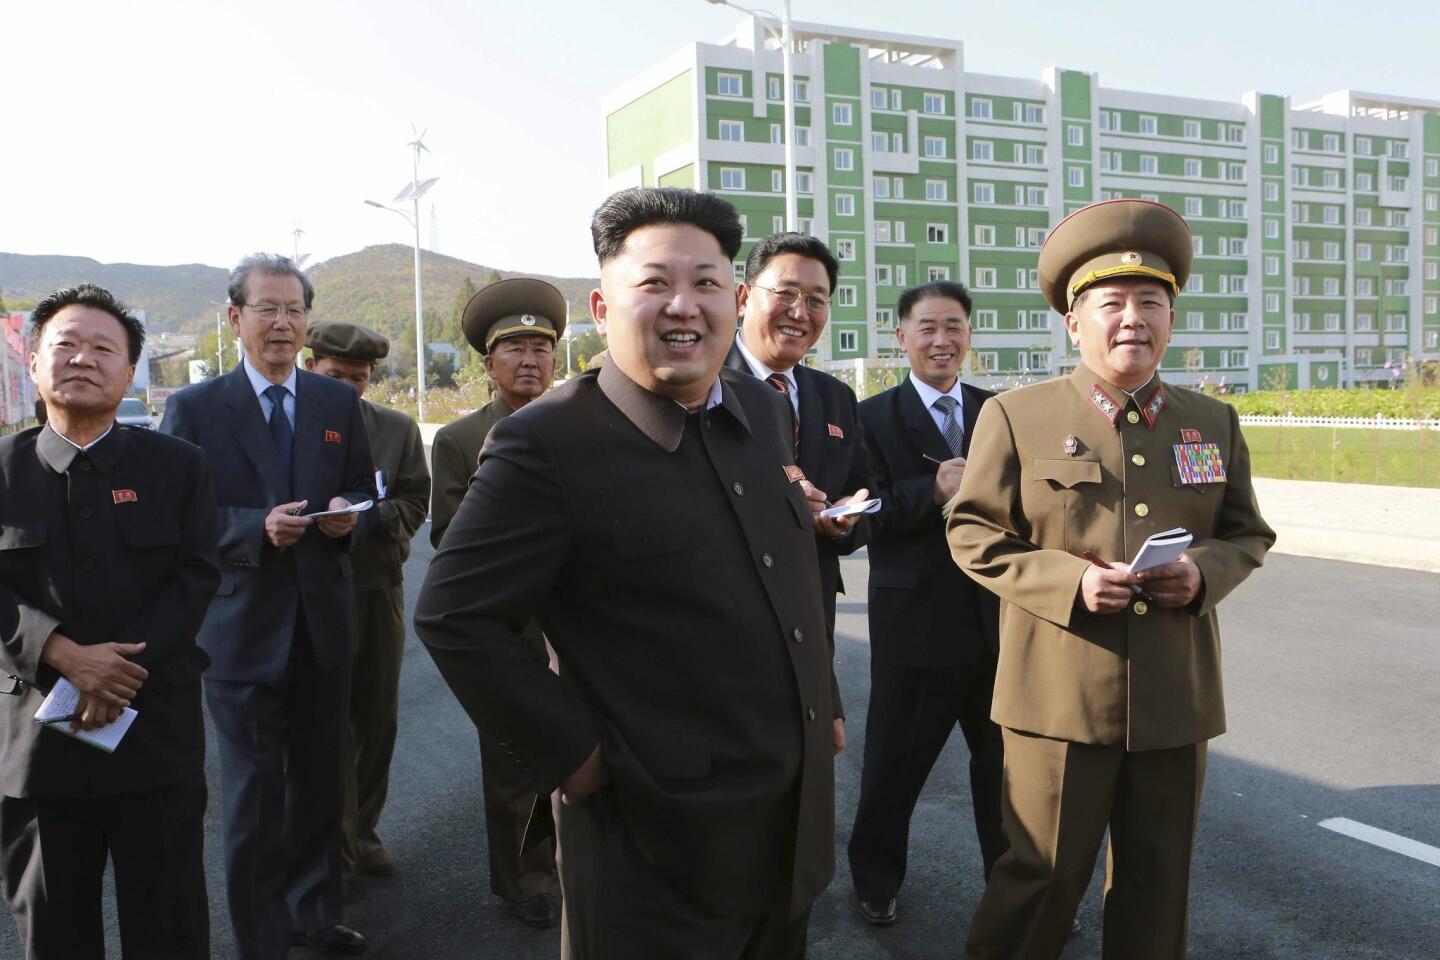 Kim Jong Un re-appears